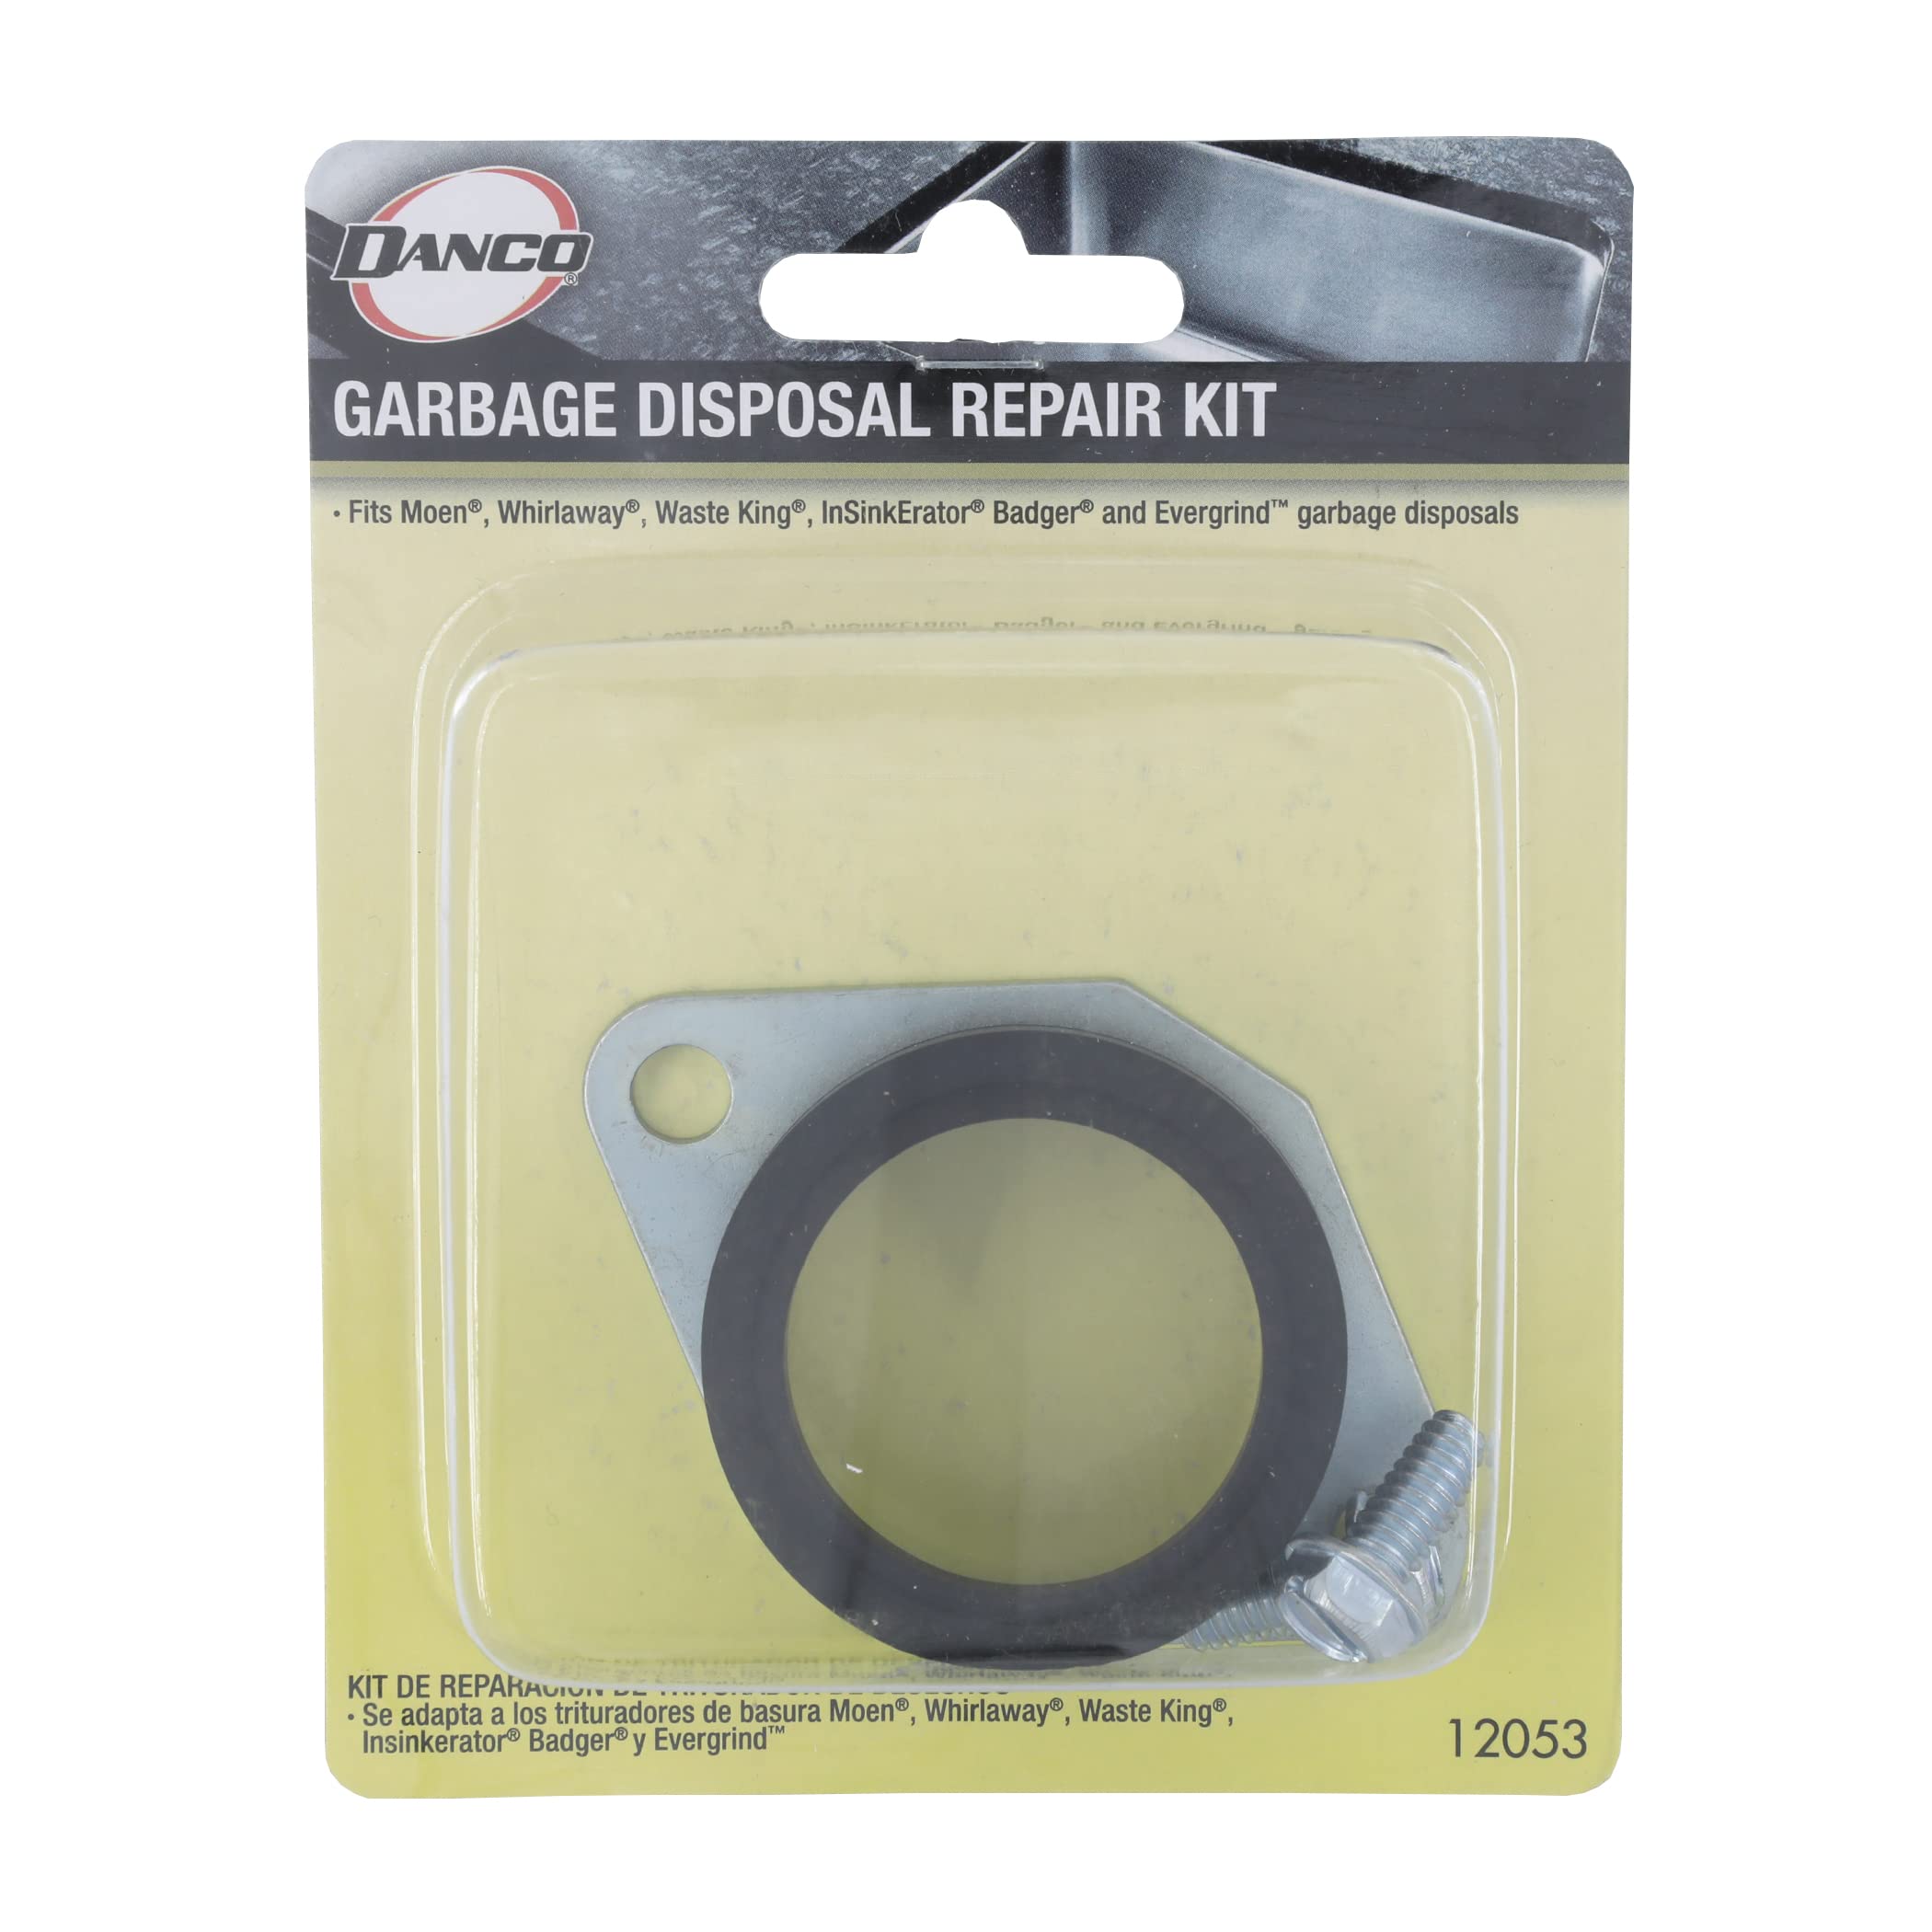 Danco 12053 Garbage Disposal Repair Kit, Black